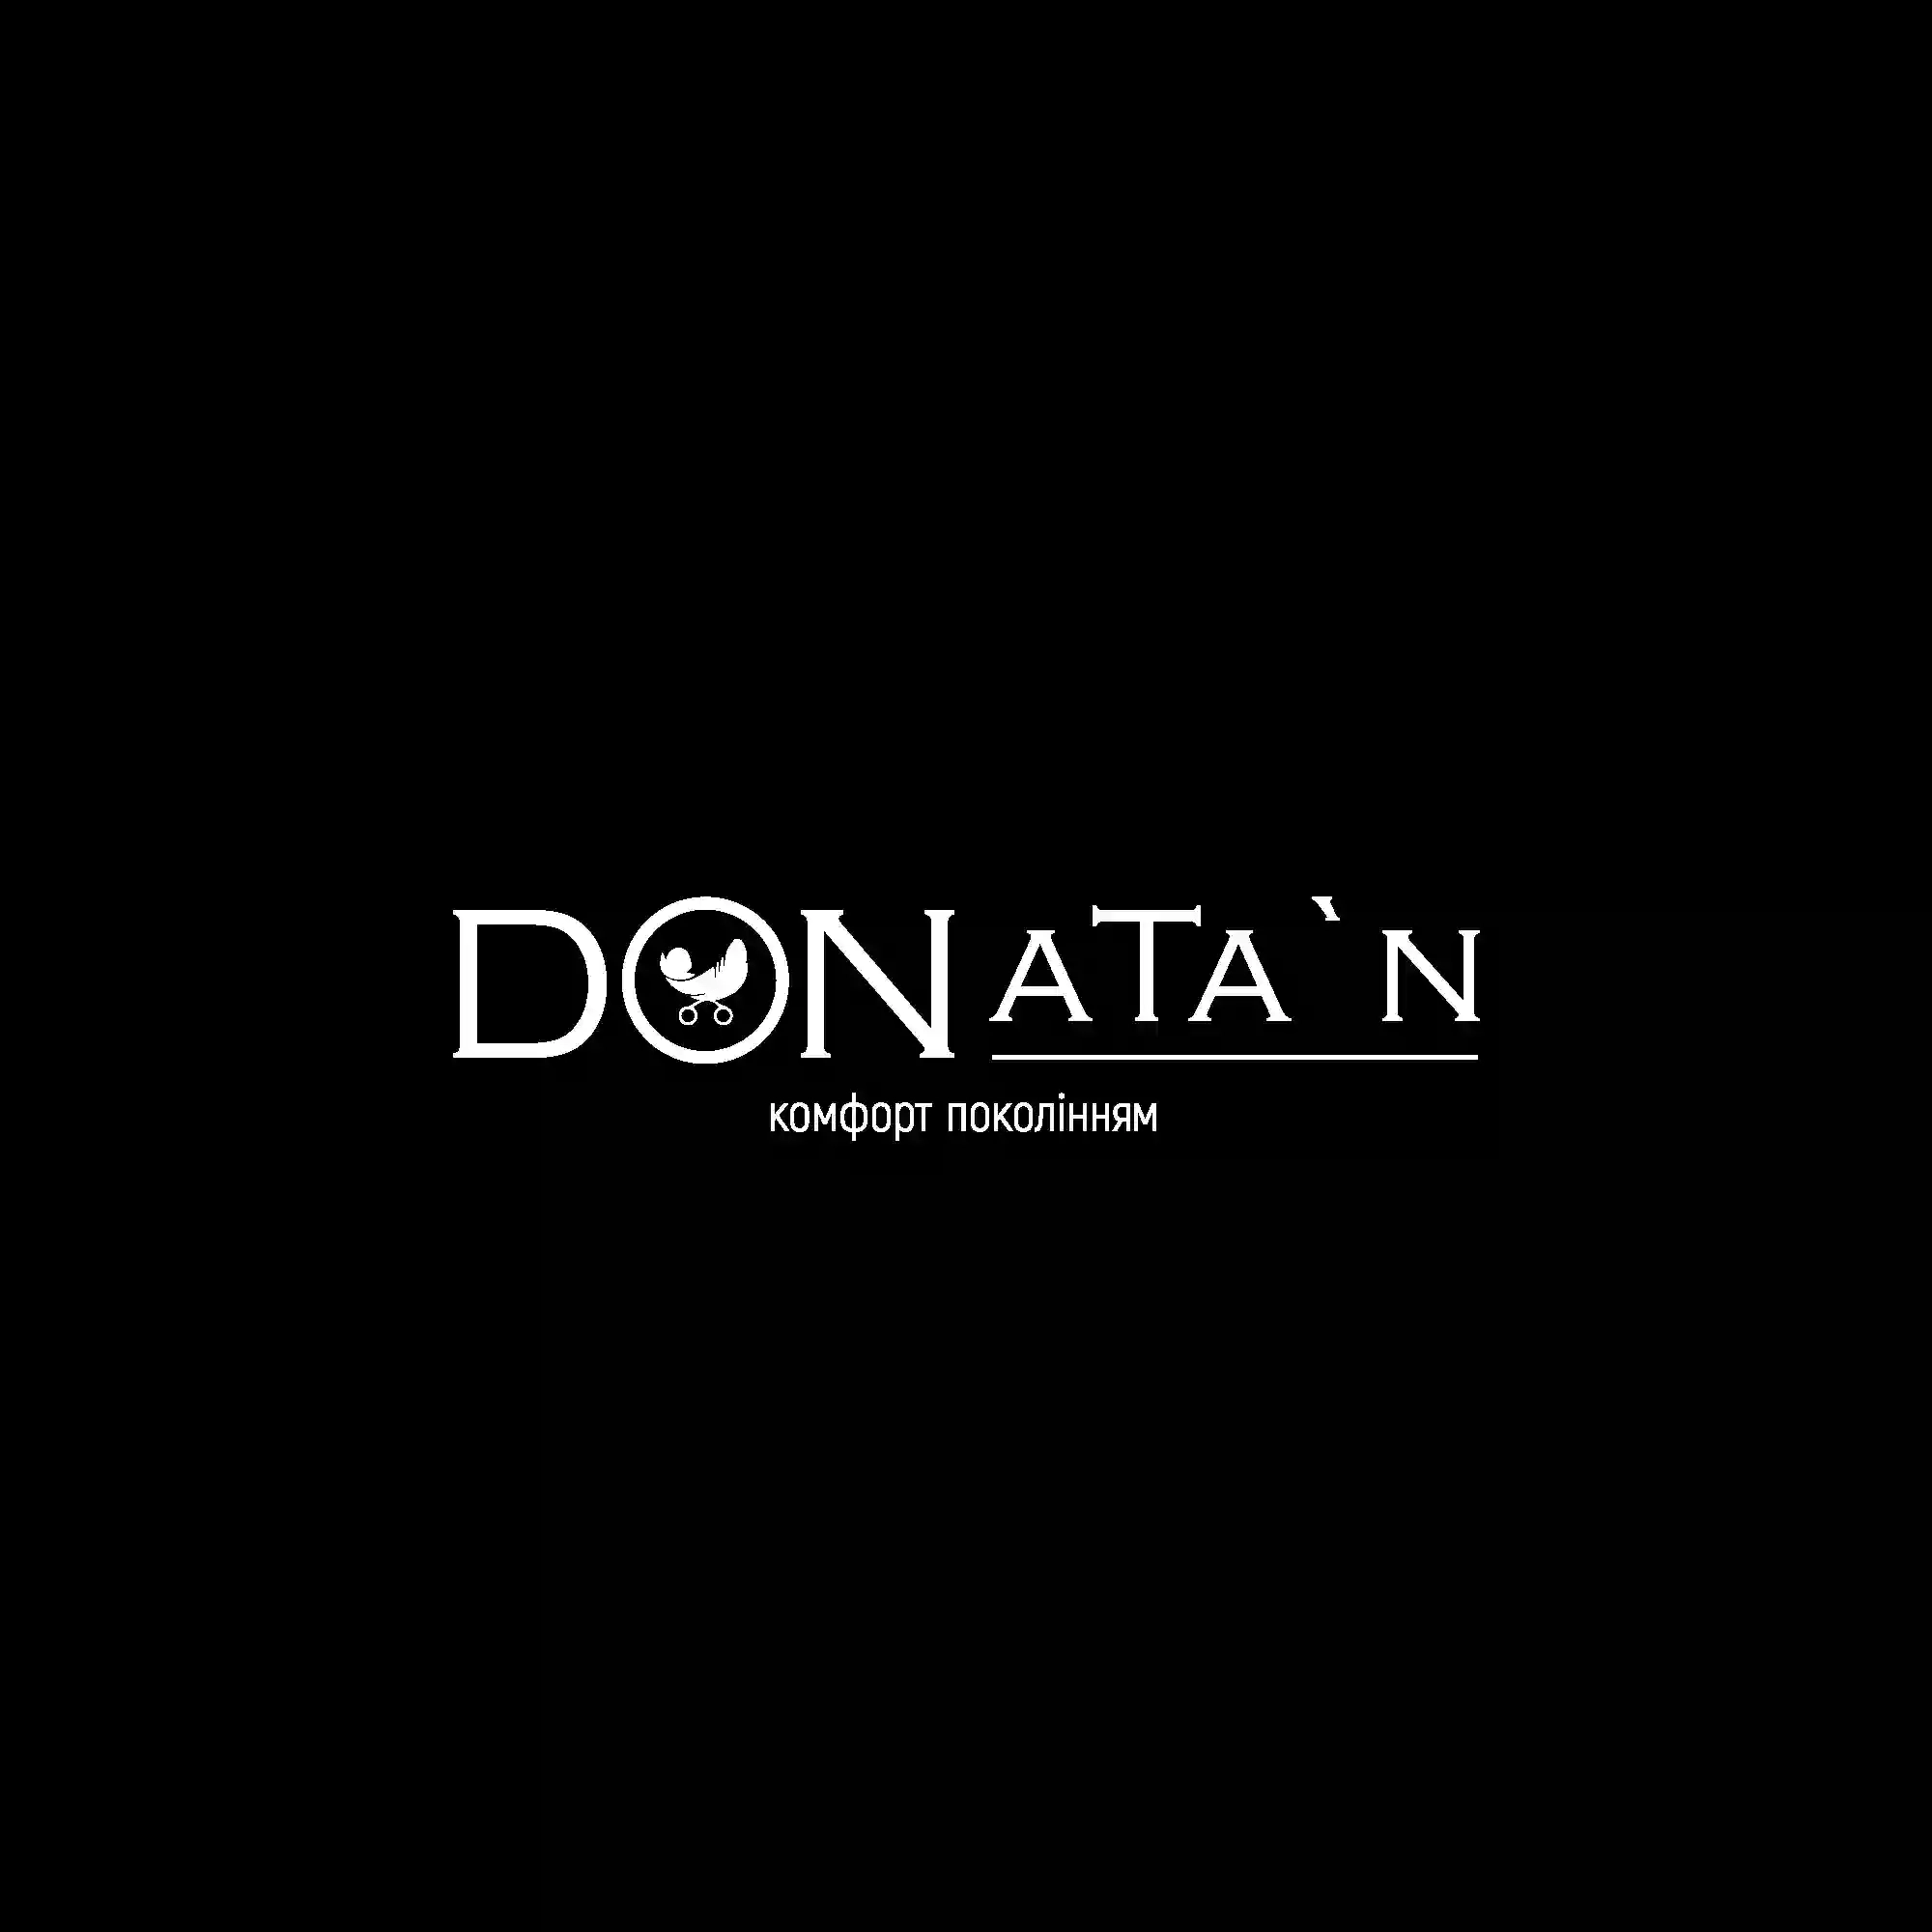 Офіційний представник візочків Donatan Ukraine